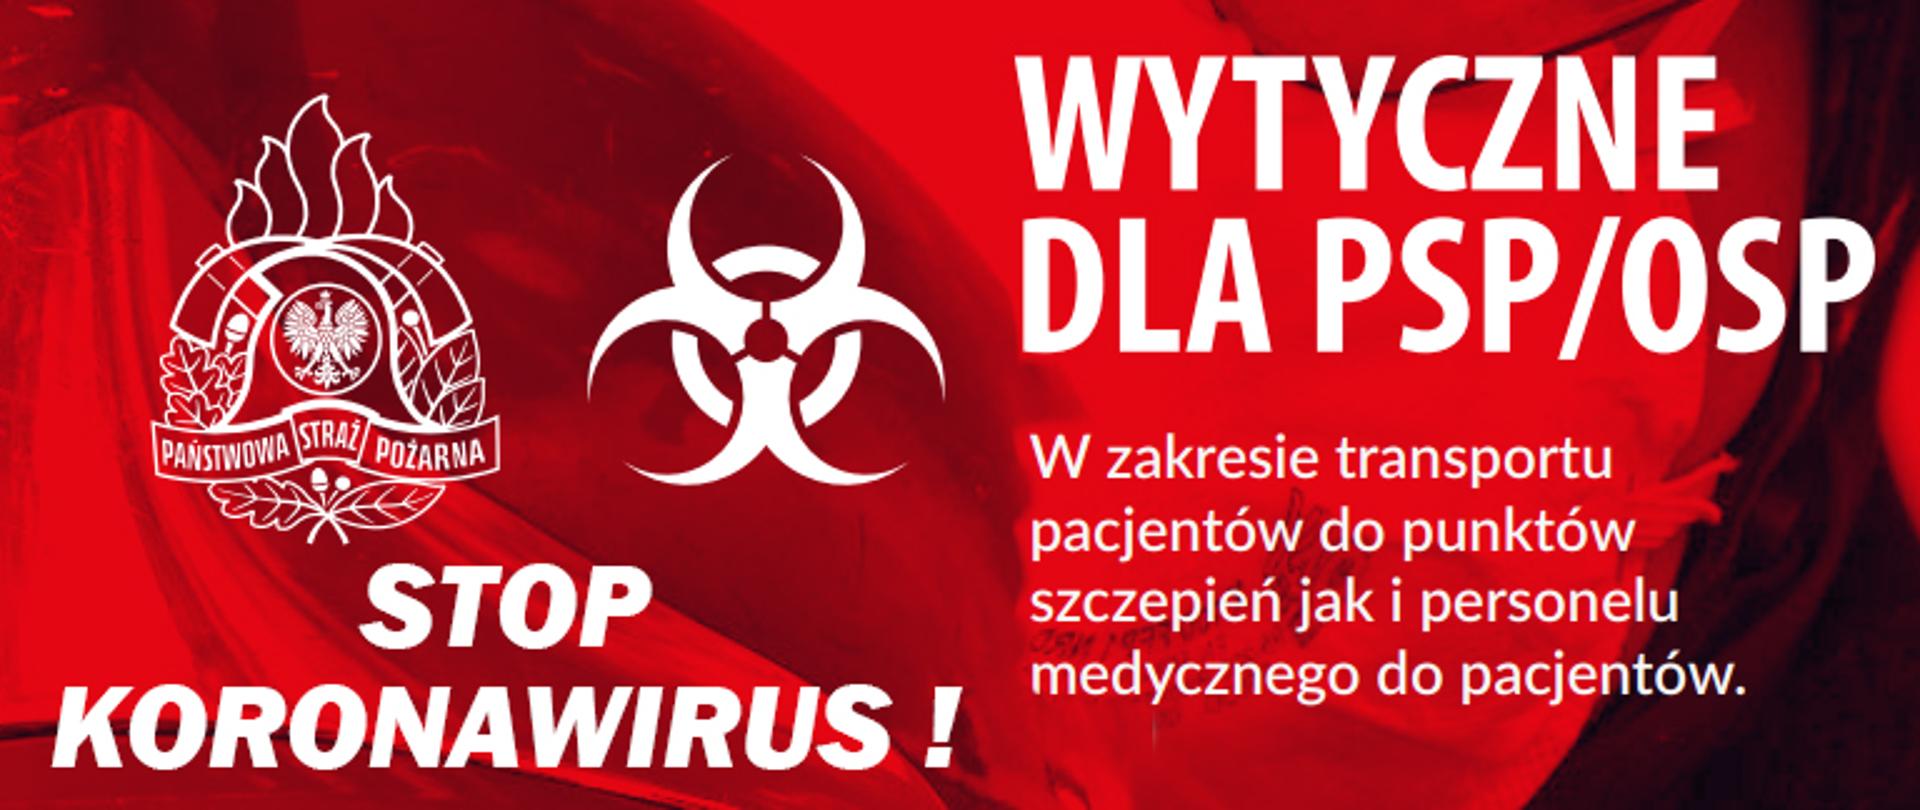 Białe logo PSP, napis STOP KORONAWIRUS oraz „Wytyczne dla PSP/OSP w zakresie transportu pacjentów do punktów szczepień jak i personelu medycznego dla pacjentów”